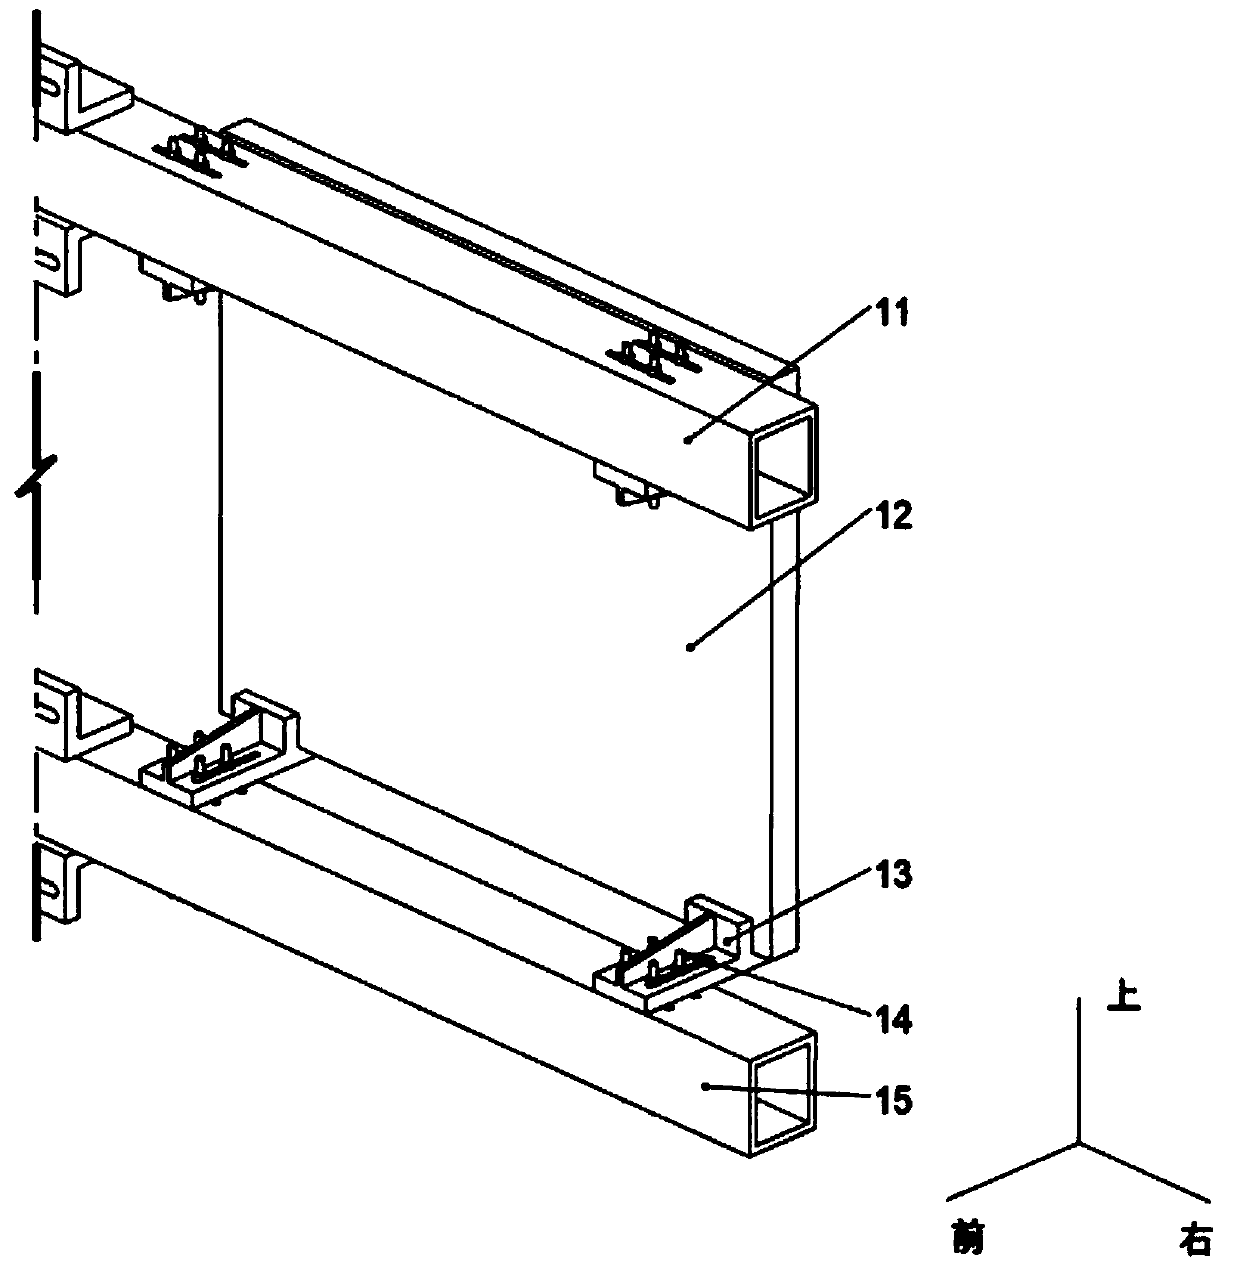 Optical panel bracket with multi-degree-of-freedom adjustment capacity